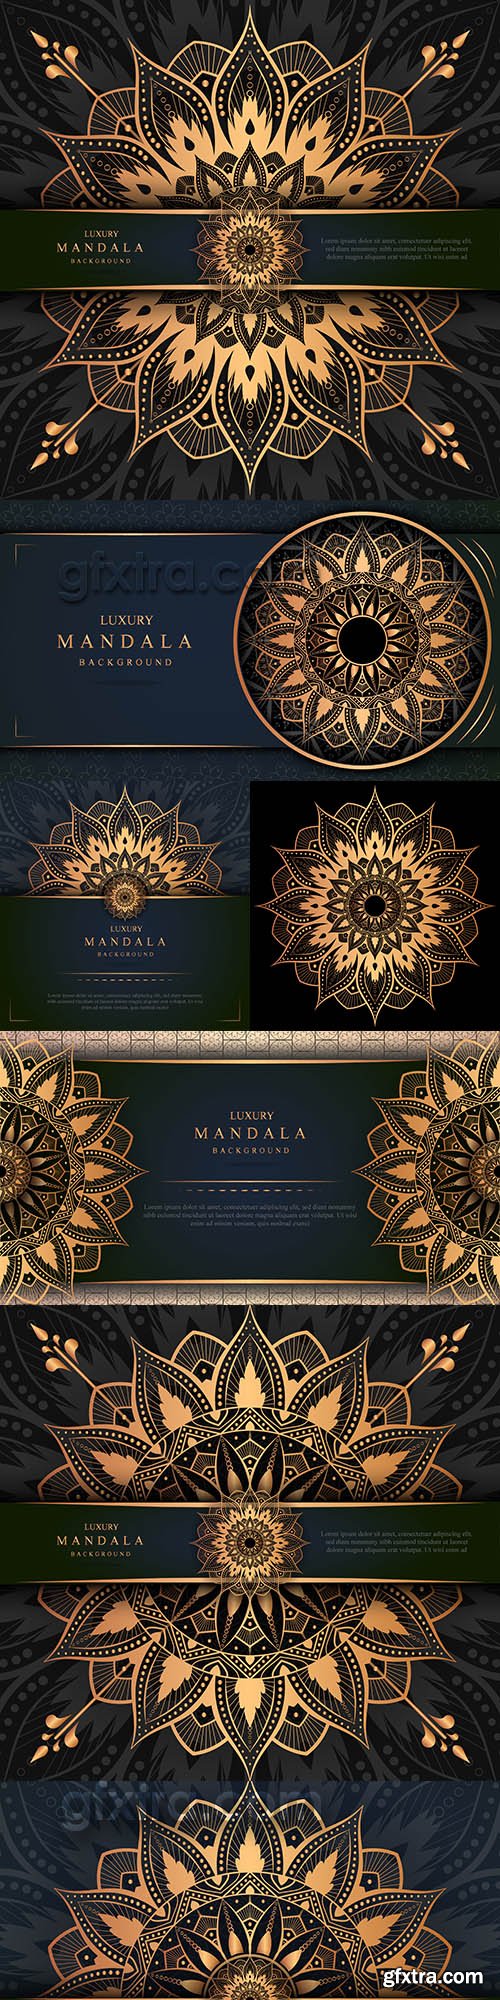 Luxury mandala gold decor Arabic Islamic background 3